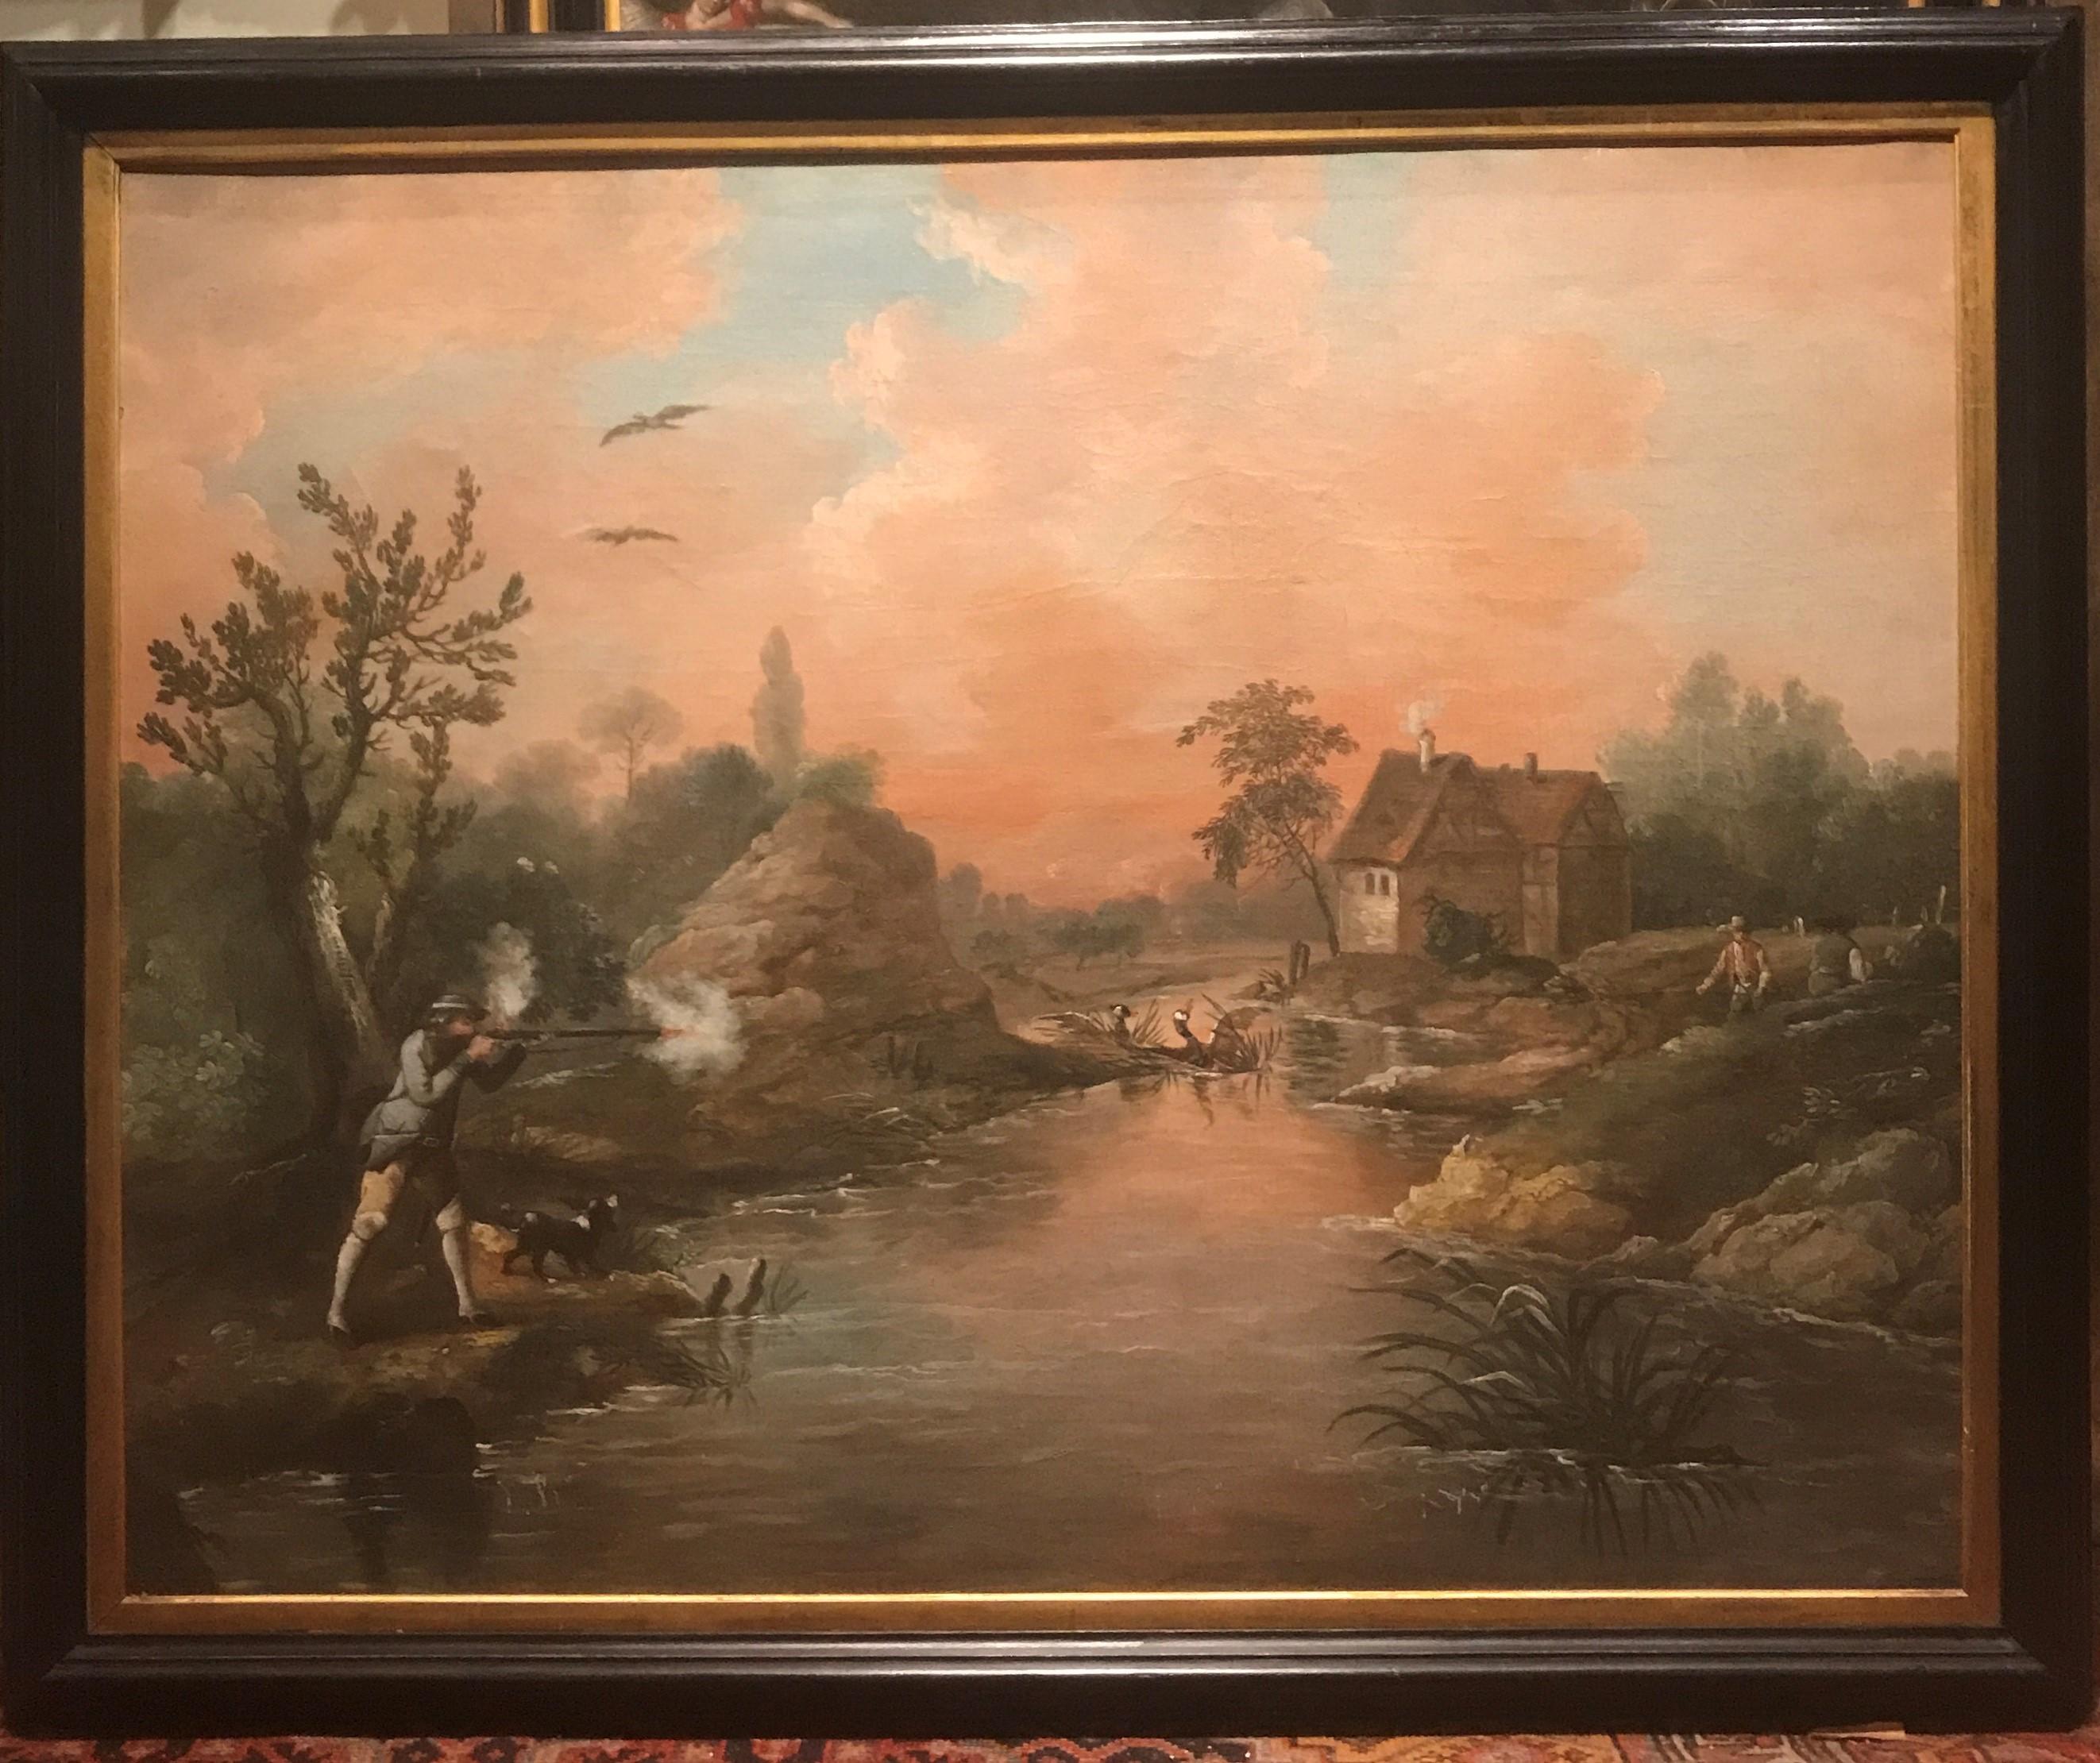 Attribué à James Ross Snr.
Une grande peinture de chasse du 18e siècle représentant un canard volant
huile sur toile
36.5 x 45 pouces, cadre compris

Ce grand tableau datant d'environ 1720 est très rare. Il représente un gentilhomme au crépuscule,